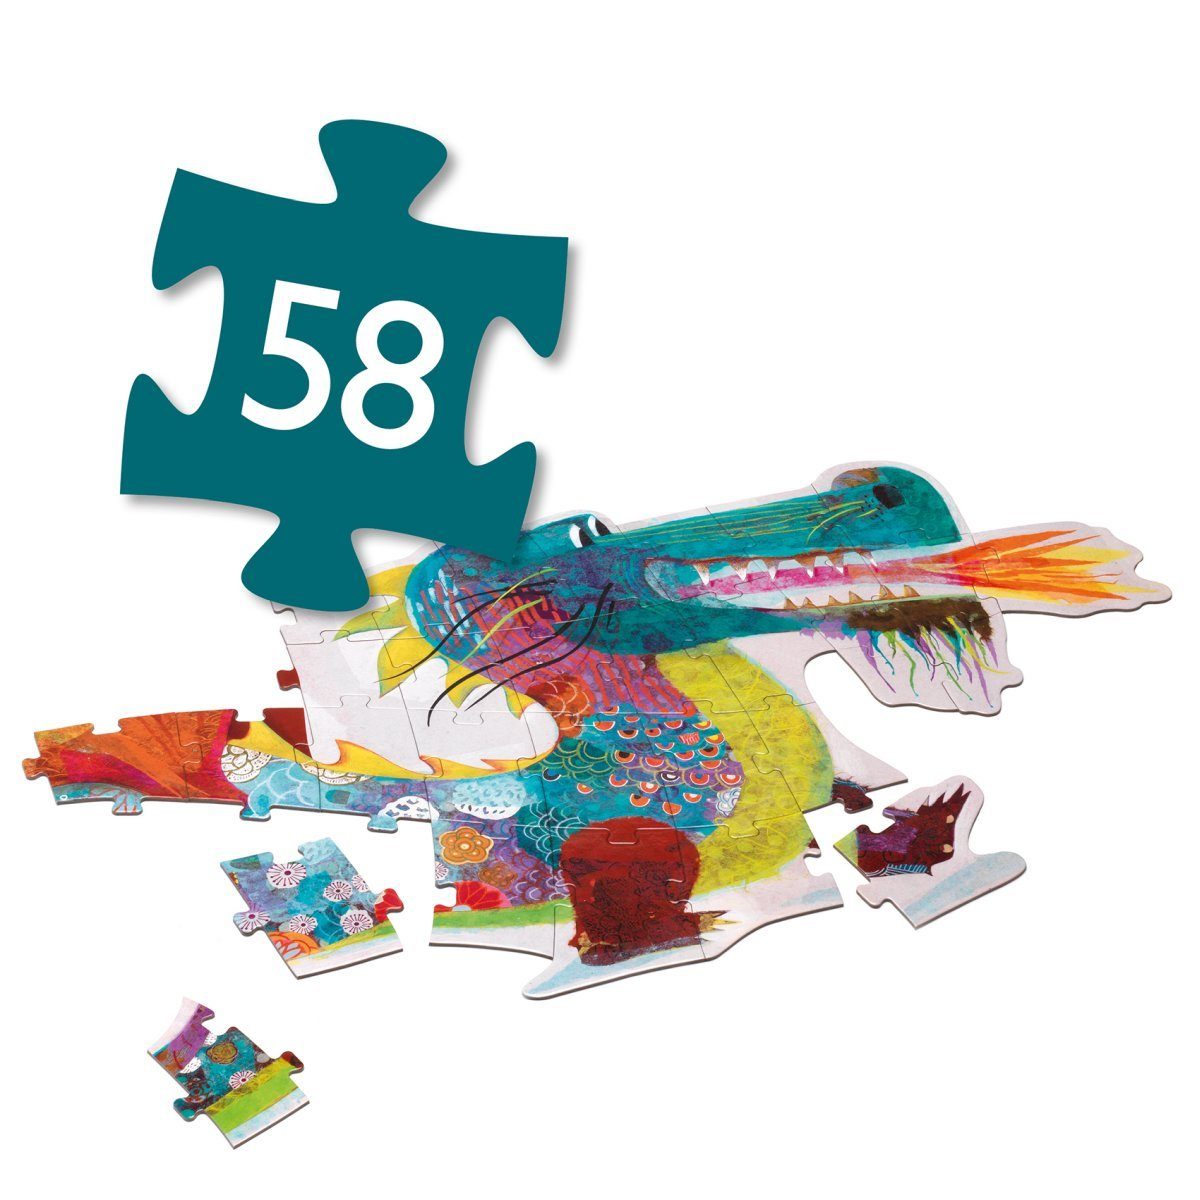 DJECO lang, Leon Konturenpuzzle 58 58 Puzzle Drache Puzzleteile 1,38 der m Teile